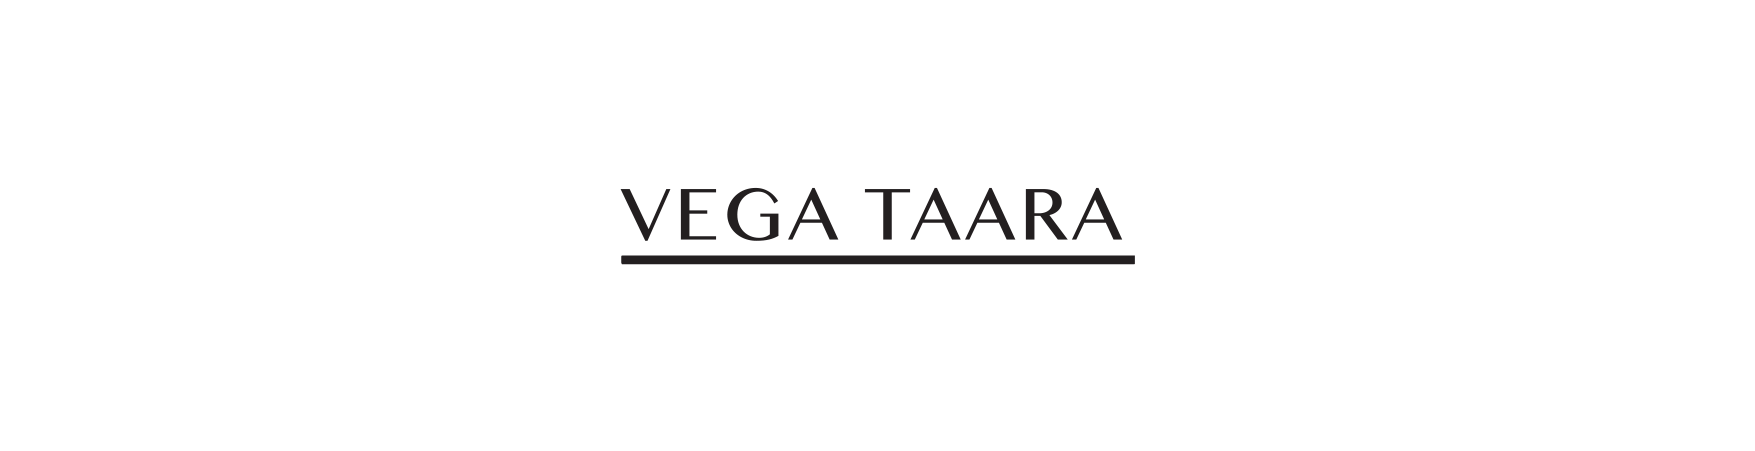 Vega Taara